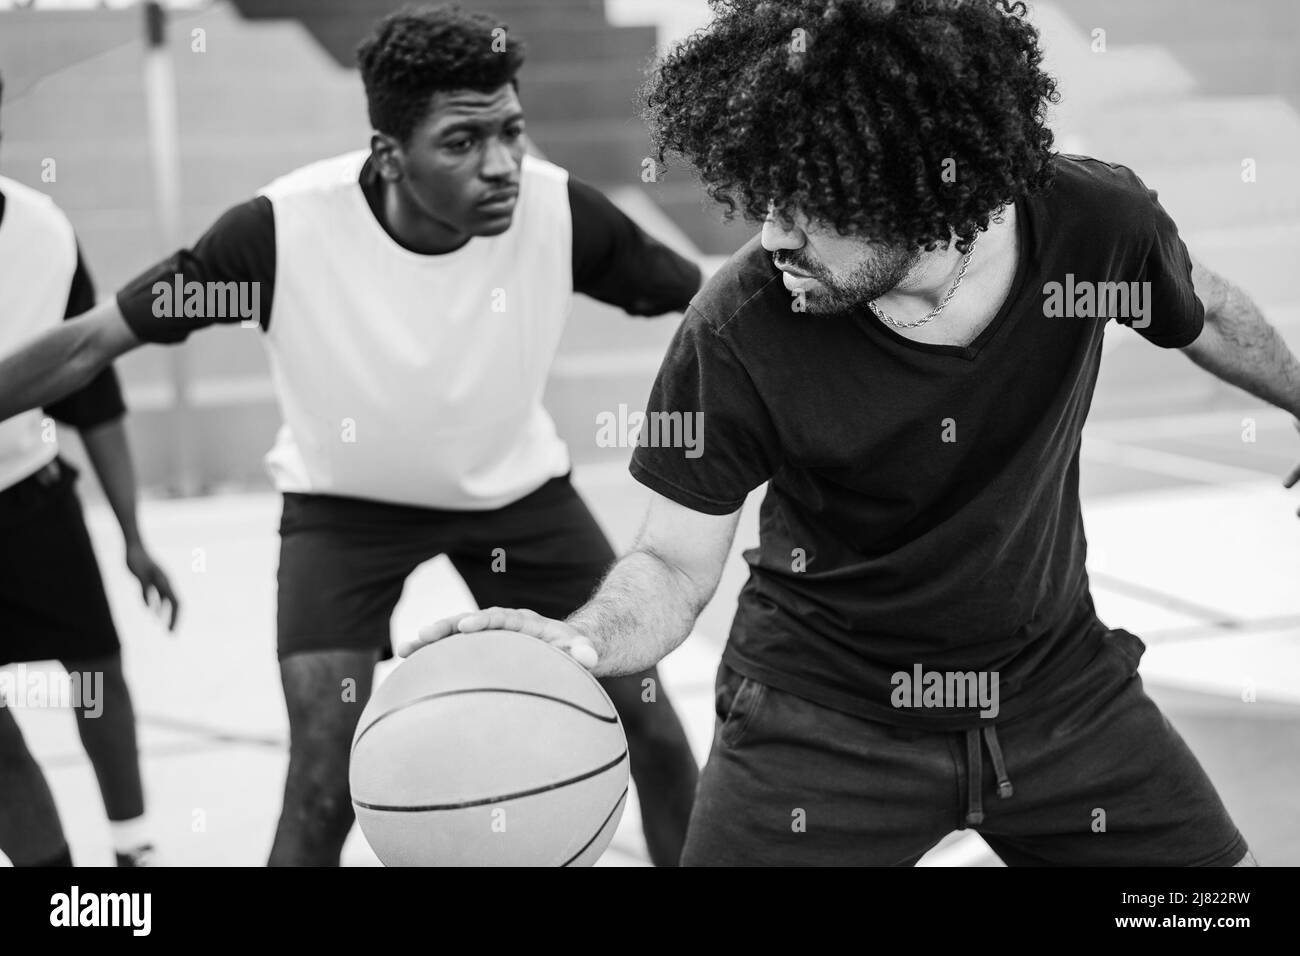 Afrikanische Freunde spielen Basketball im Freien - Weiche Fokus auf rechten Mann Schulter - Schwarz-Weiß-Schnitt Stockfoto